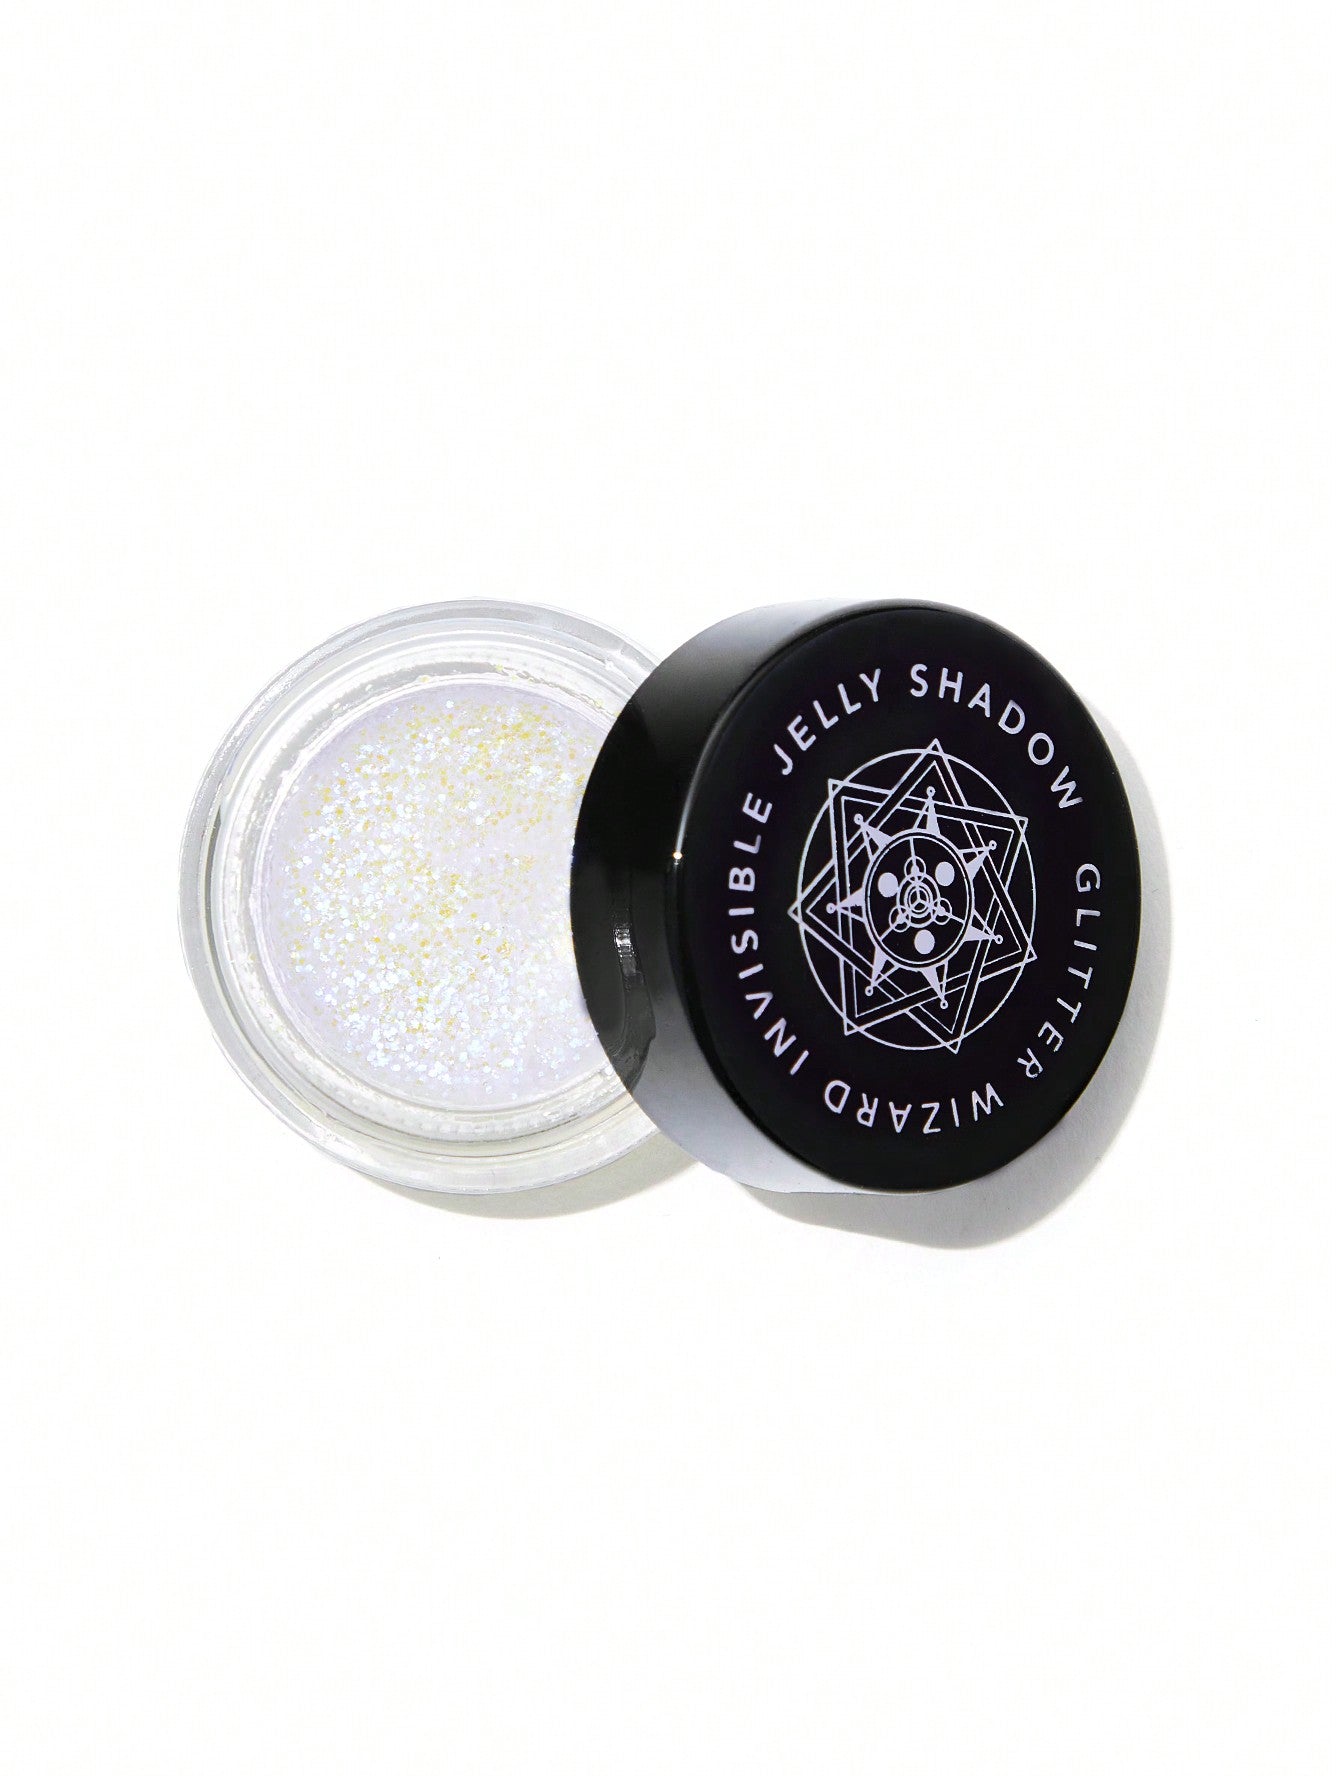 Glitter Wizard-sombra de gelatina Invisible, brillo mágico, sin manchas, no grasoso, fácil de usar, crema suave y suave